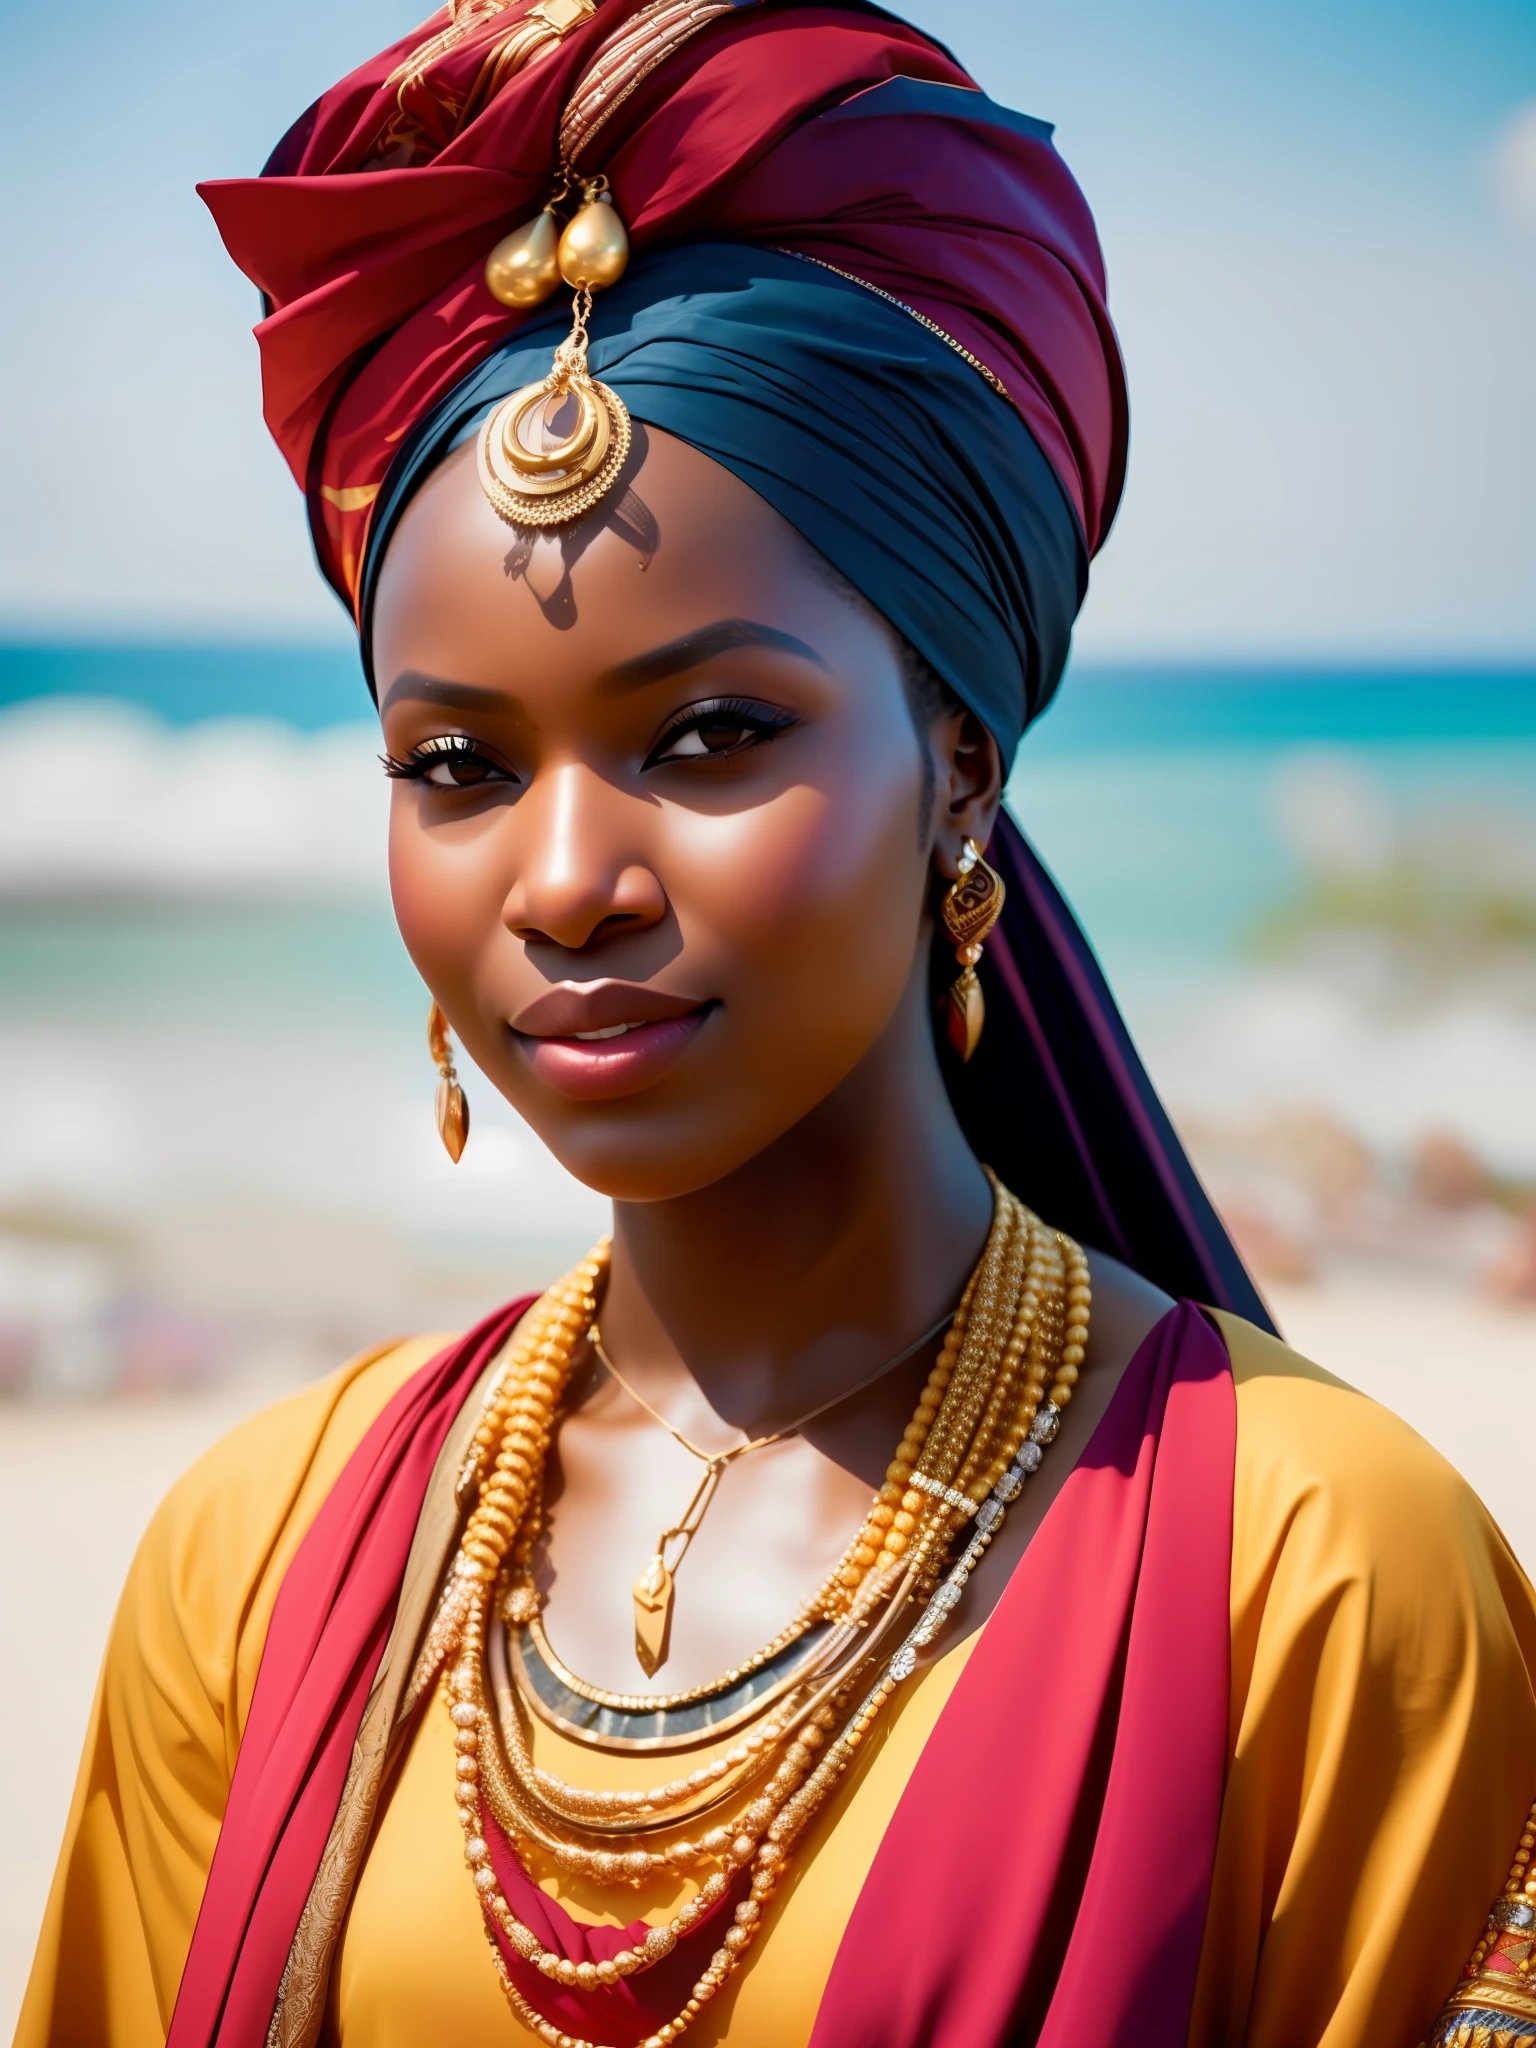 verdammt_Science-Fiction, verdammt_Science-Fiction_v2, Porträt einer jungen, sehr schönen Afrikanerin, vor einem Strand, reiche bunte Kleidung, Turban und goldener afrikanischer Schmuck, Nahaufnahme, königliche Pose und Haltung. verdammt_Kino_v2. verdammt_Kino_v2